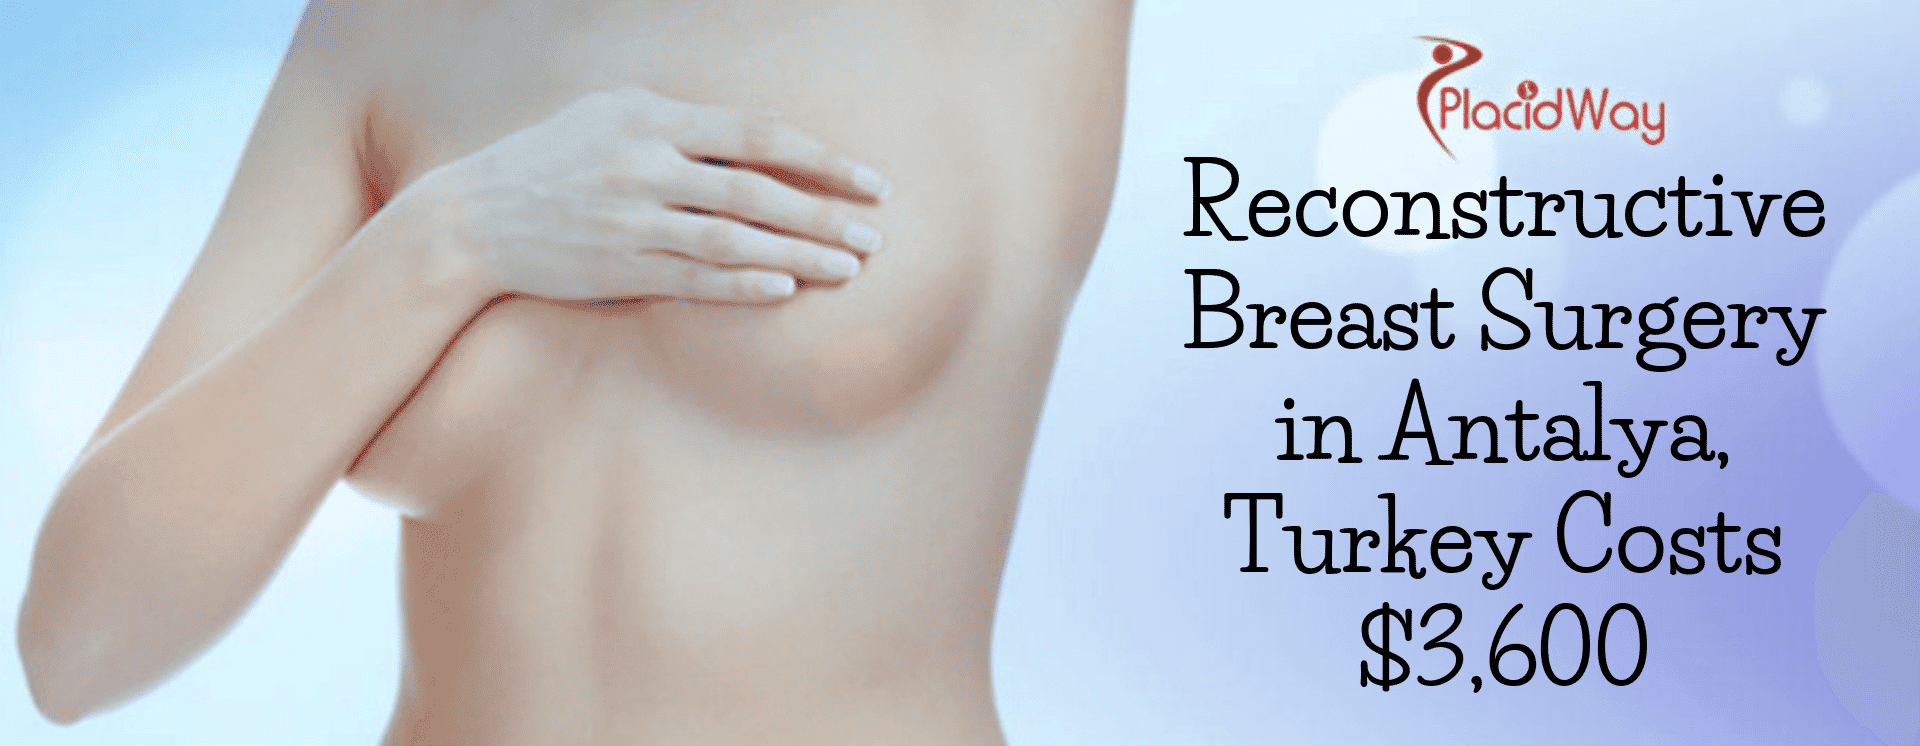 Reconstructive Breast Surgery in Antalya, Turkey